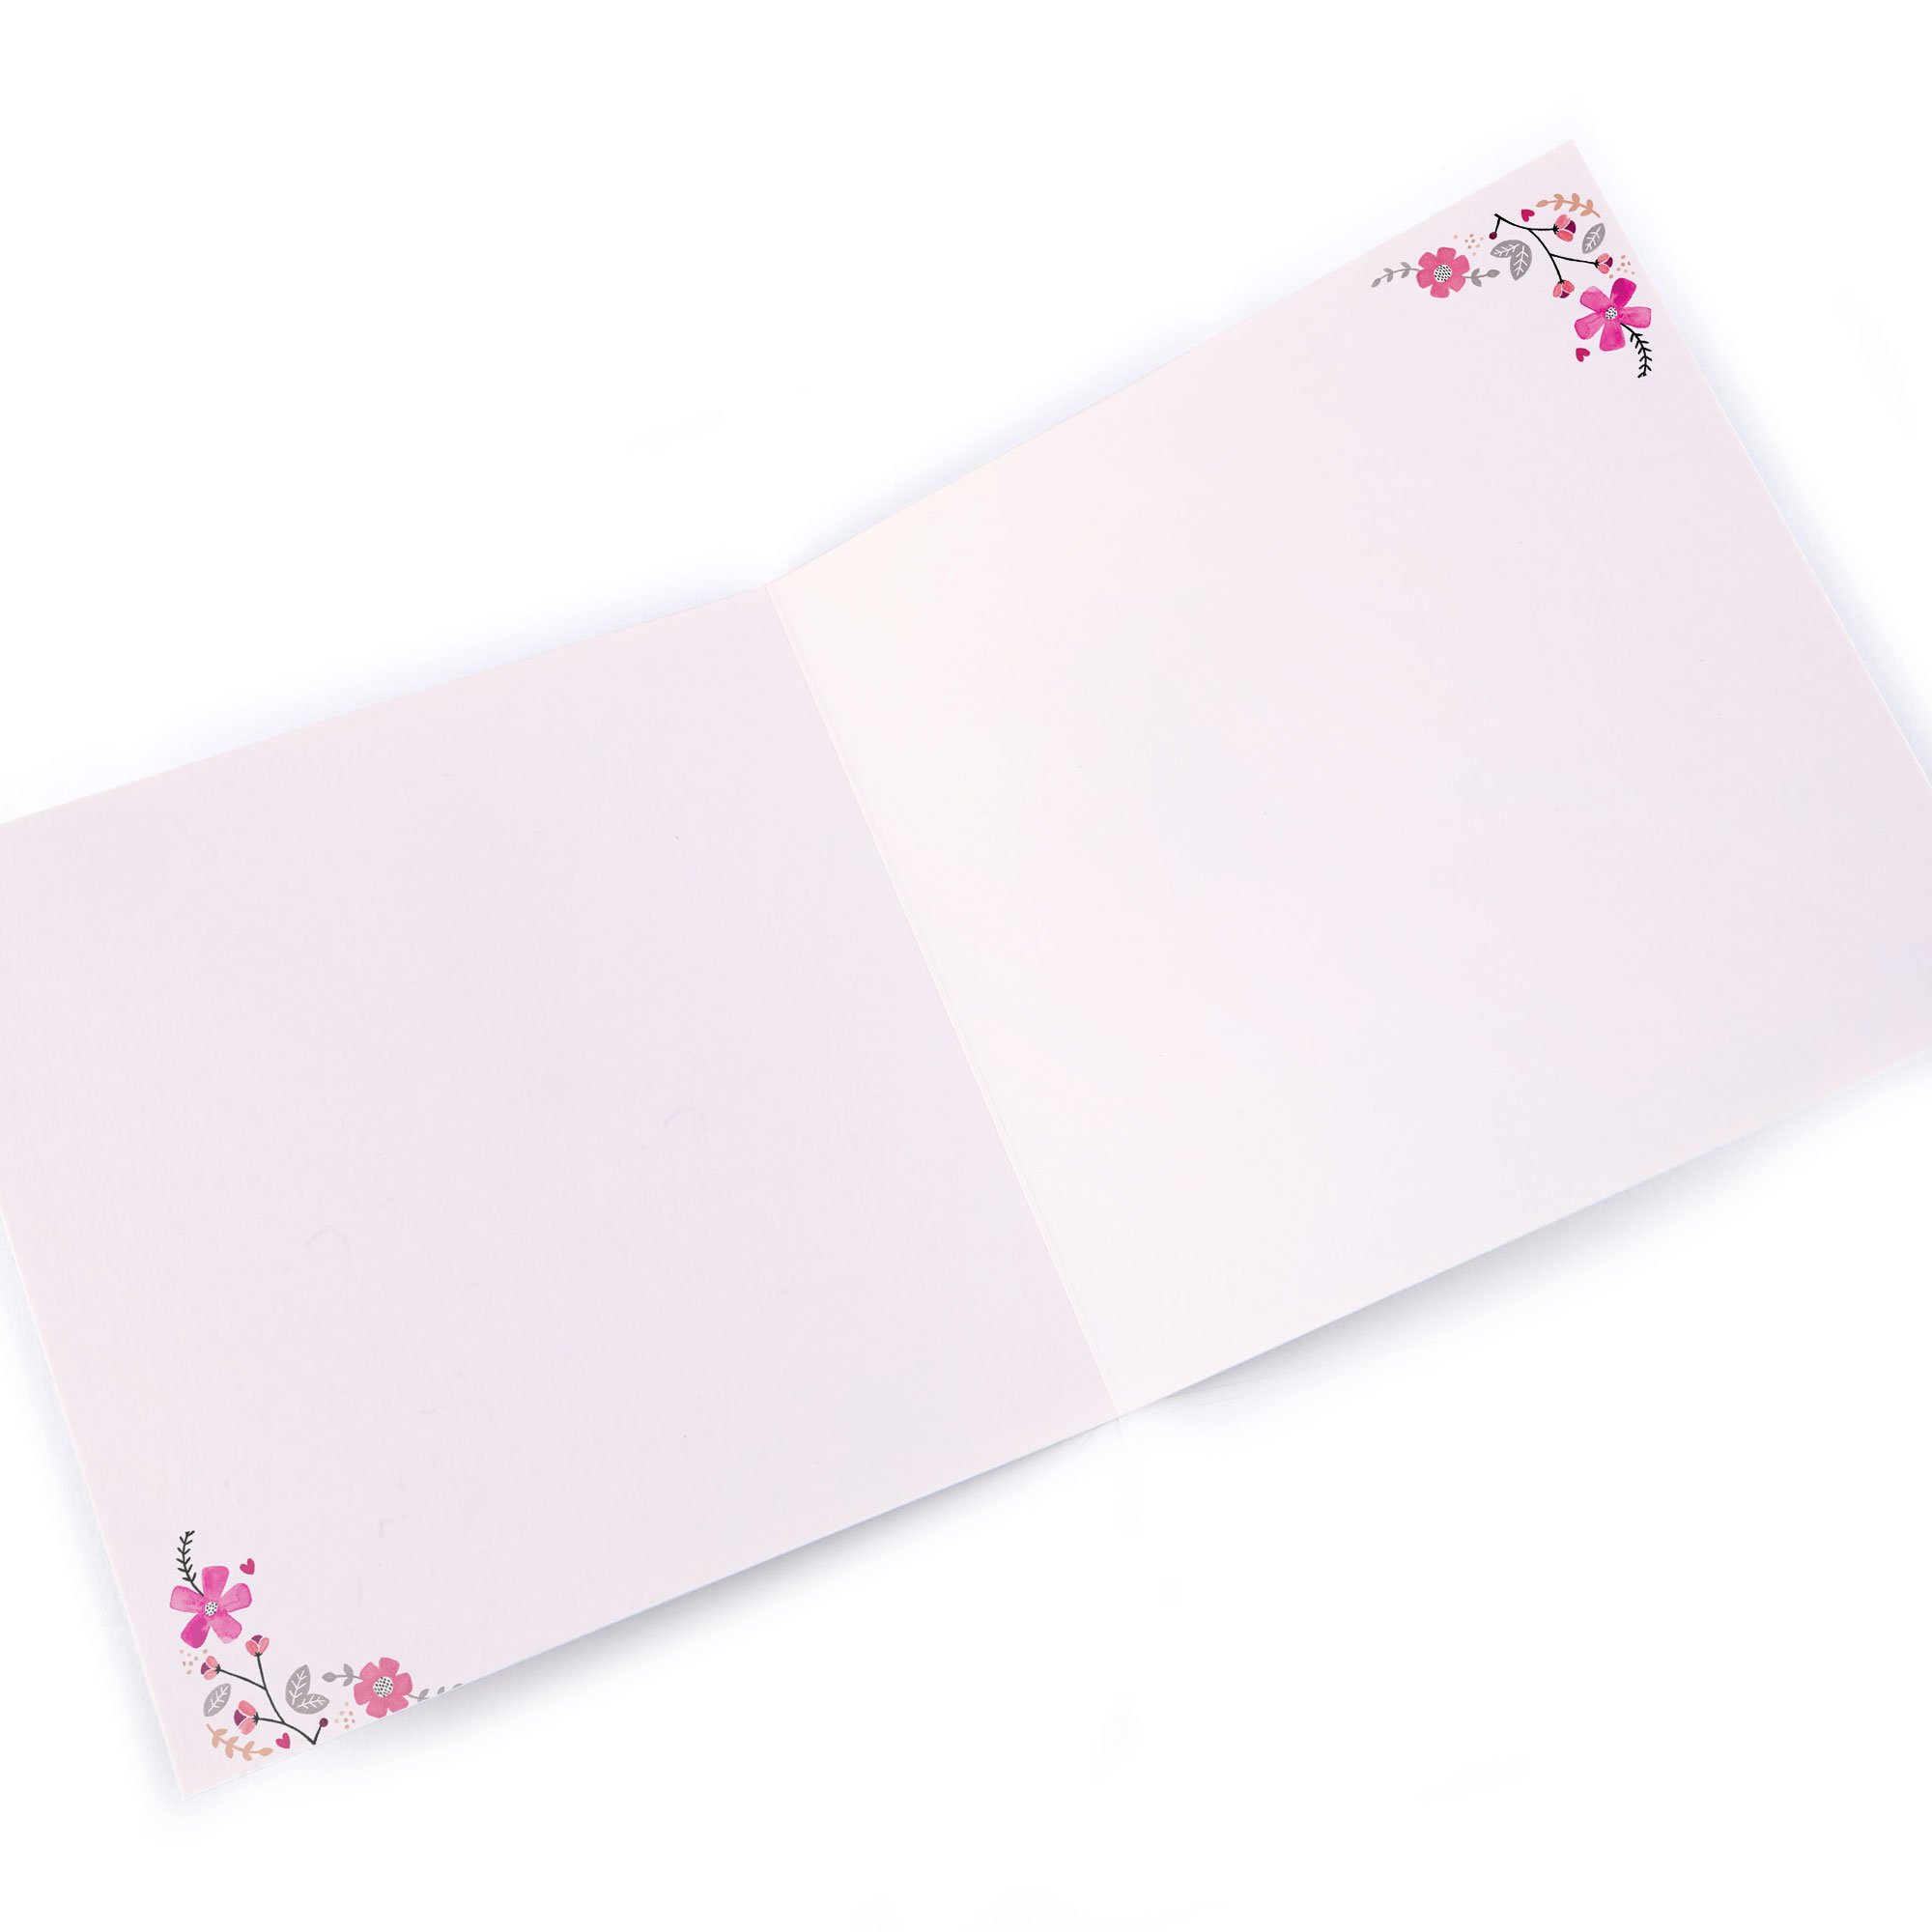 Personalised Birthday Card - Pink Flowers